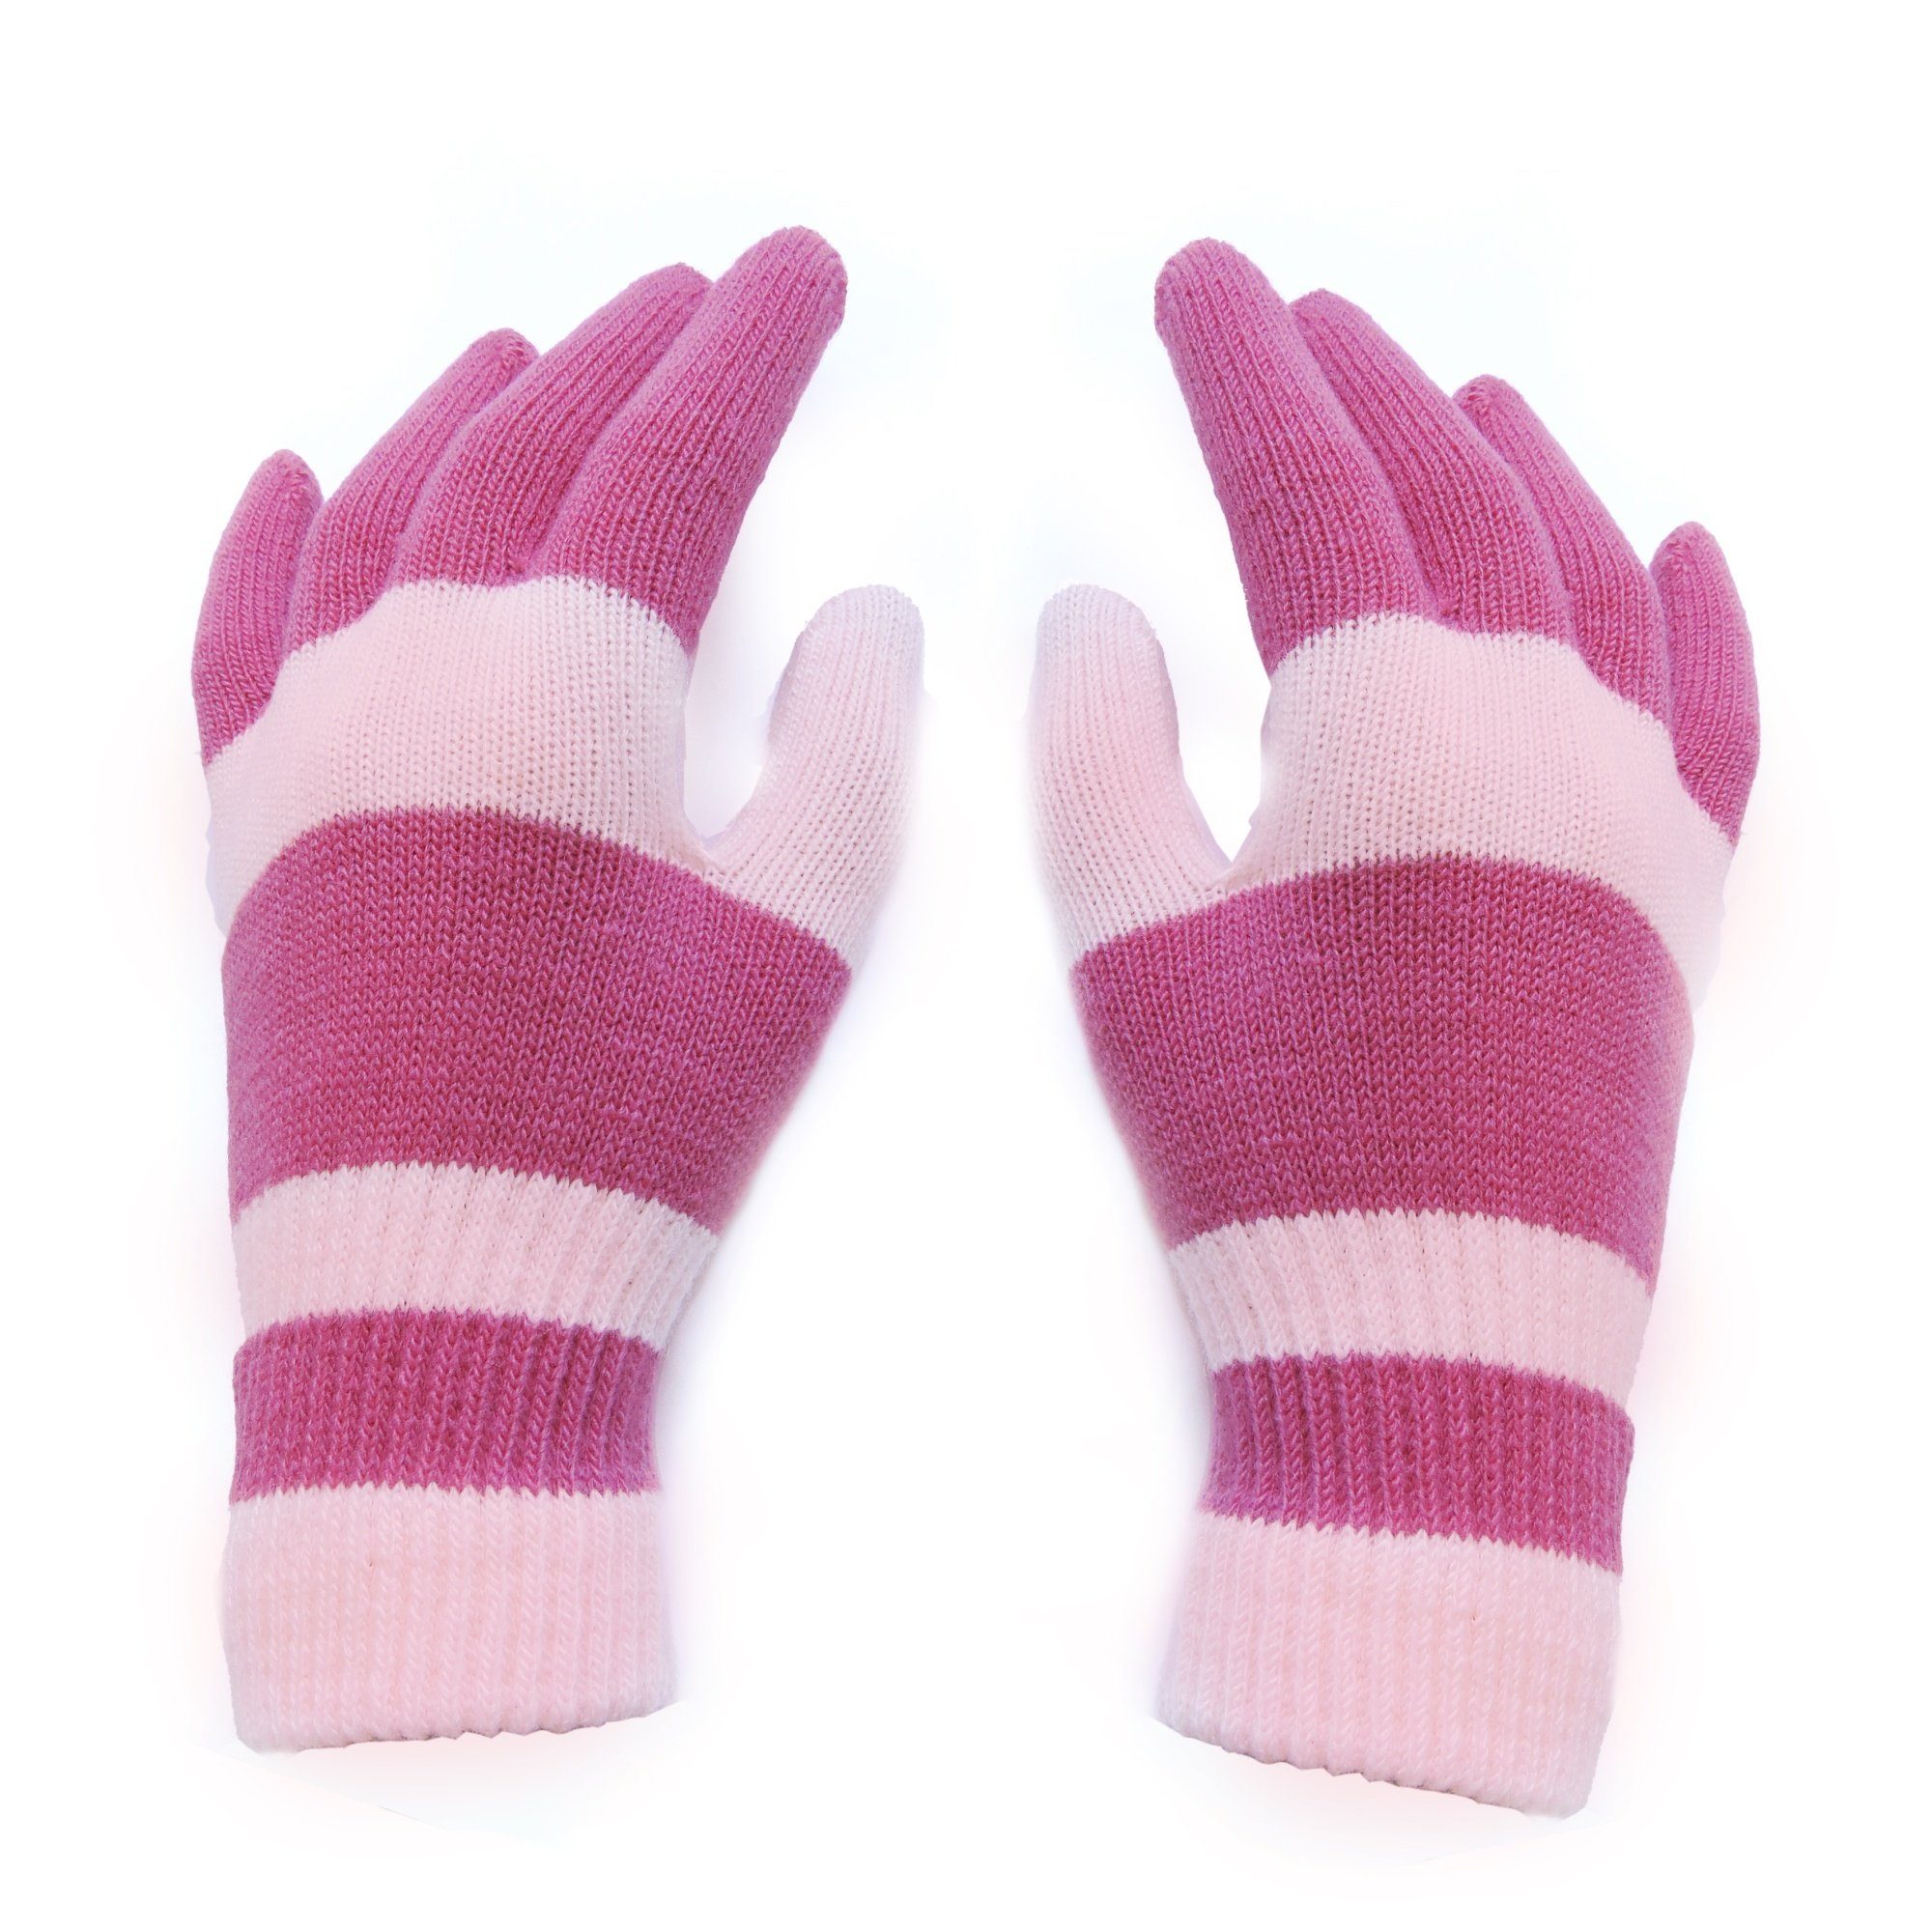 Sonia Originelli Strickhandschuhe Kinderhandschuhe gestreift pink Onesize Farben können abweichen